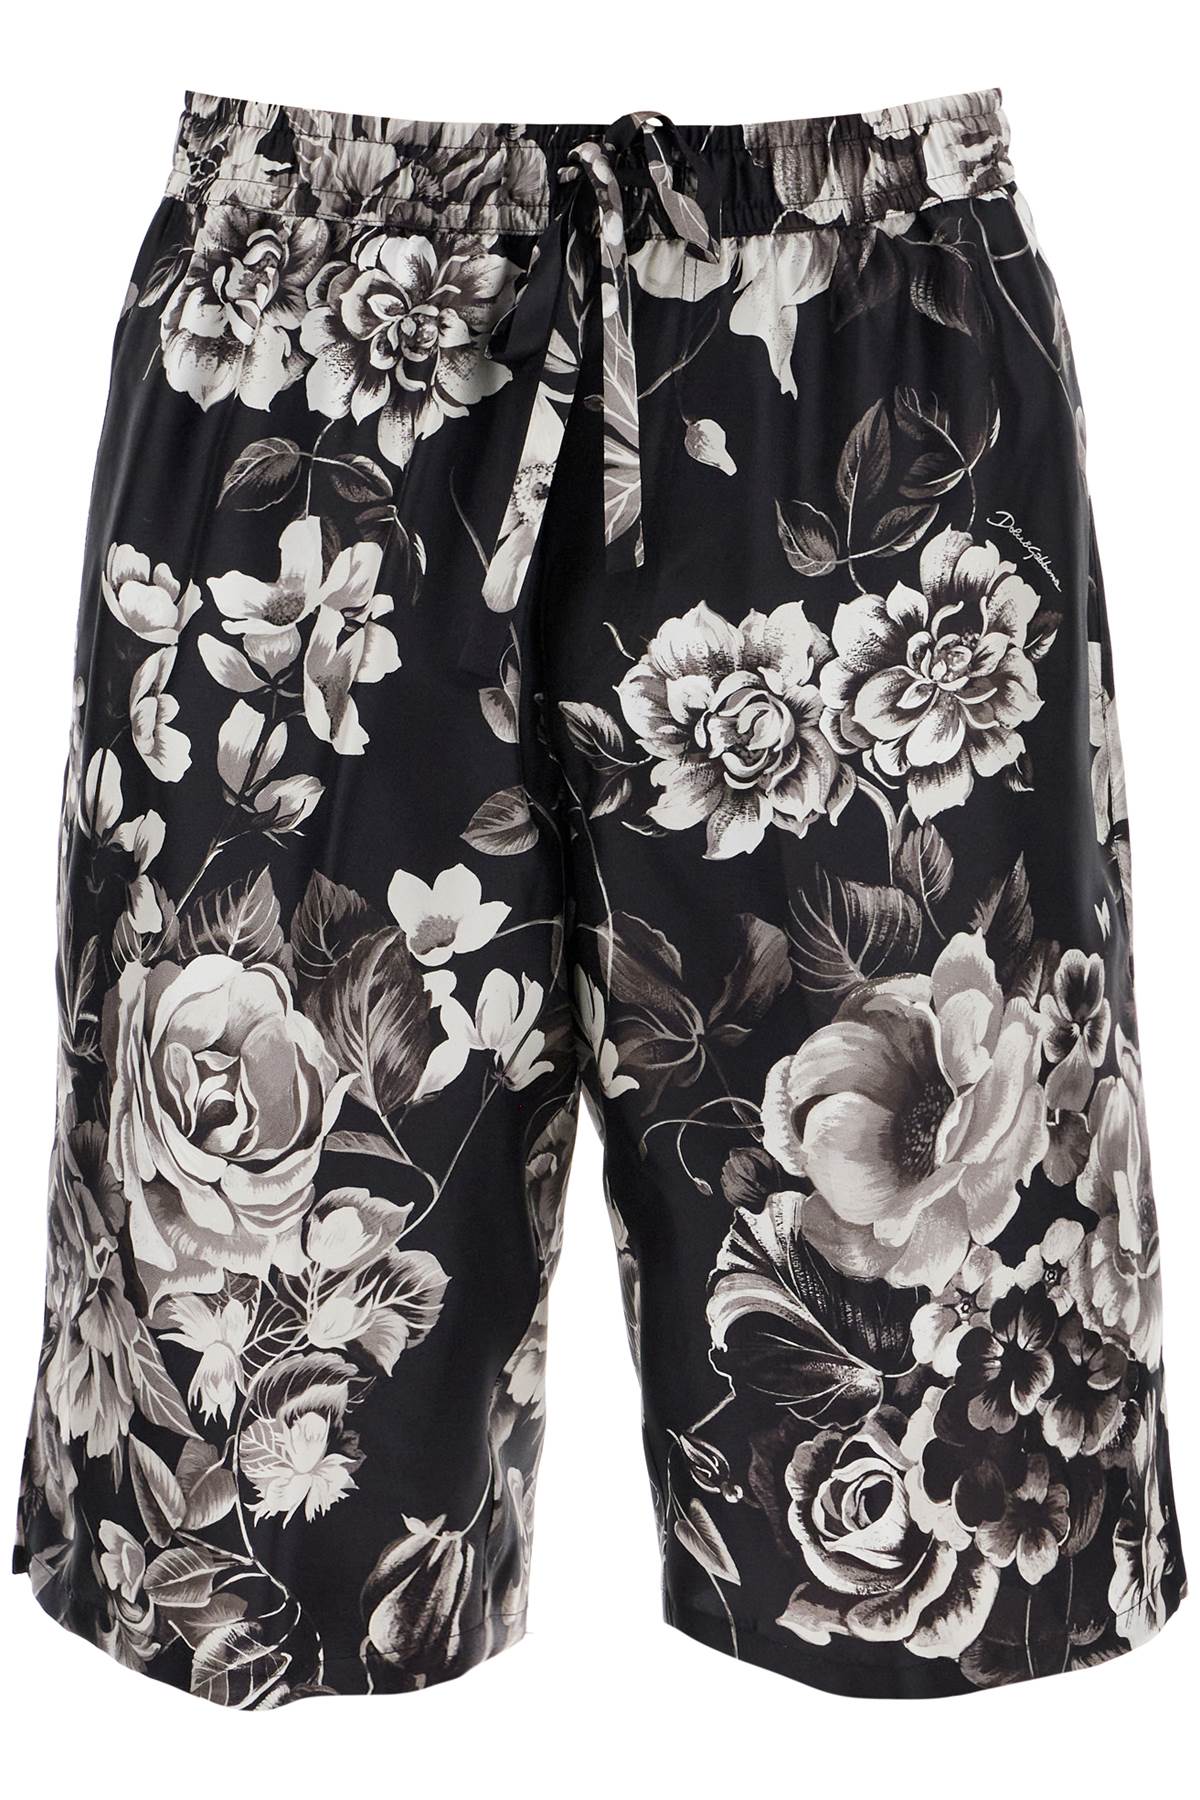 Dolce & Gabbana DOLCE & GABBANA silk floral print bermuda shorts set